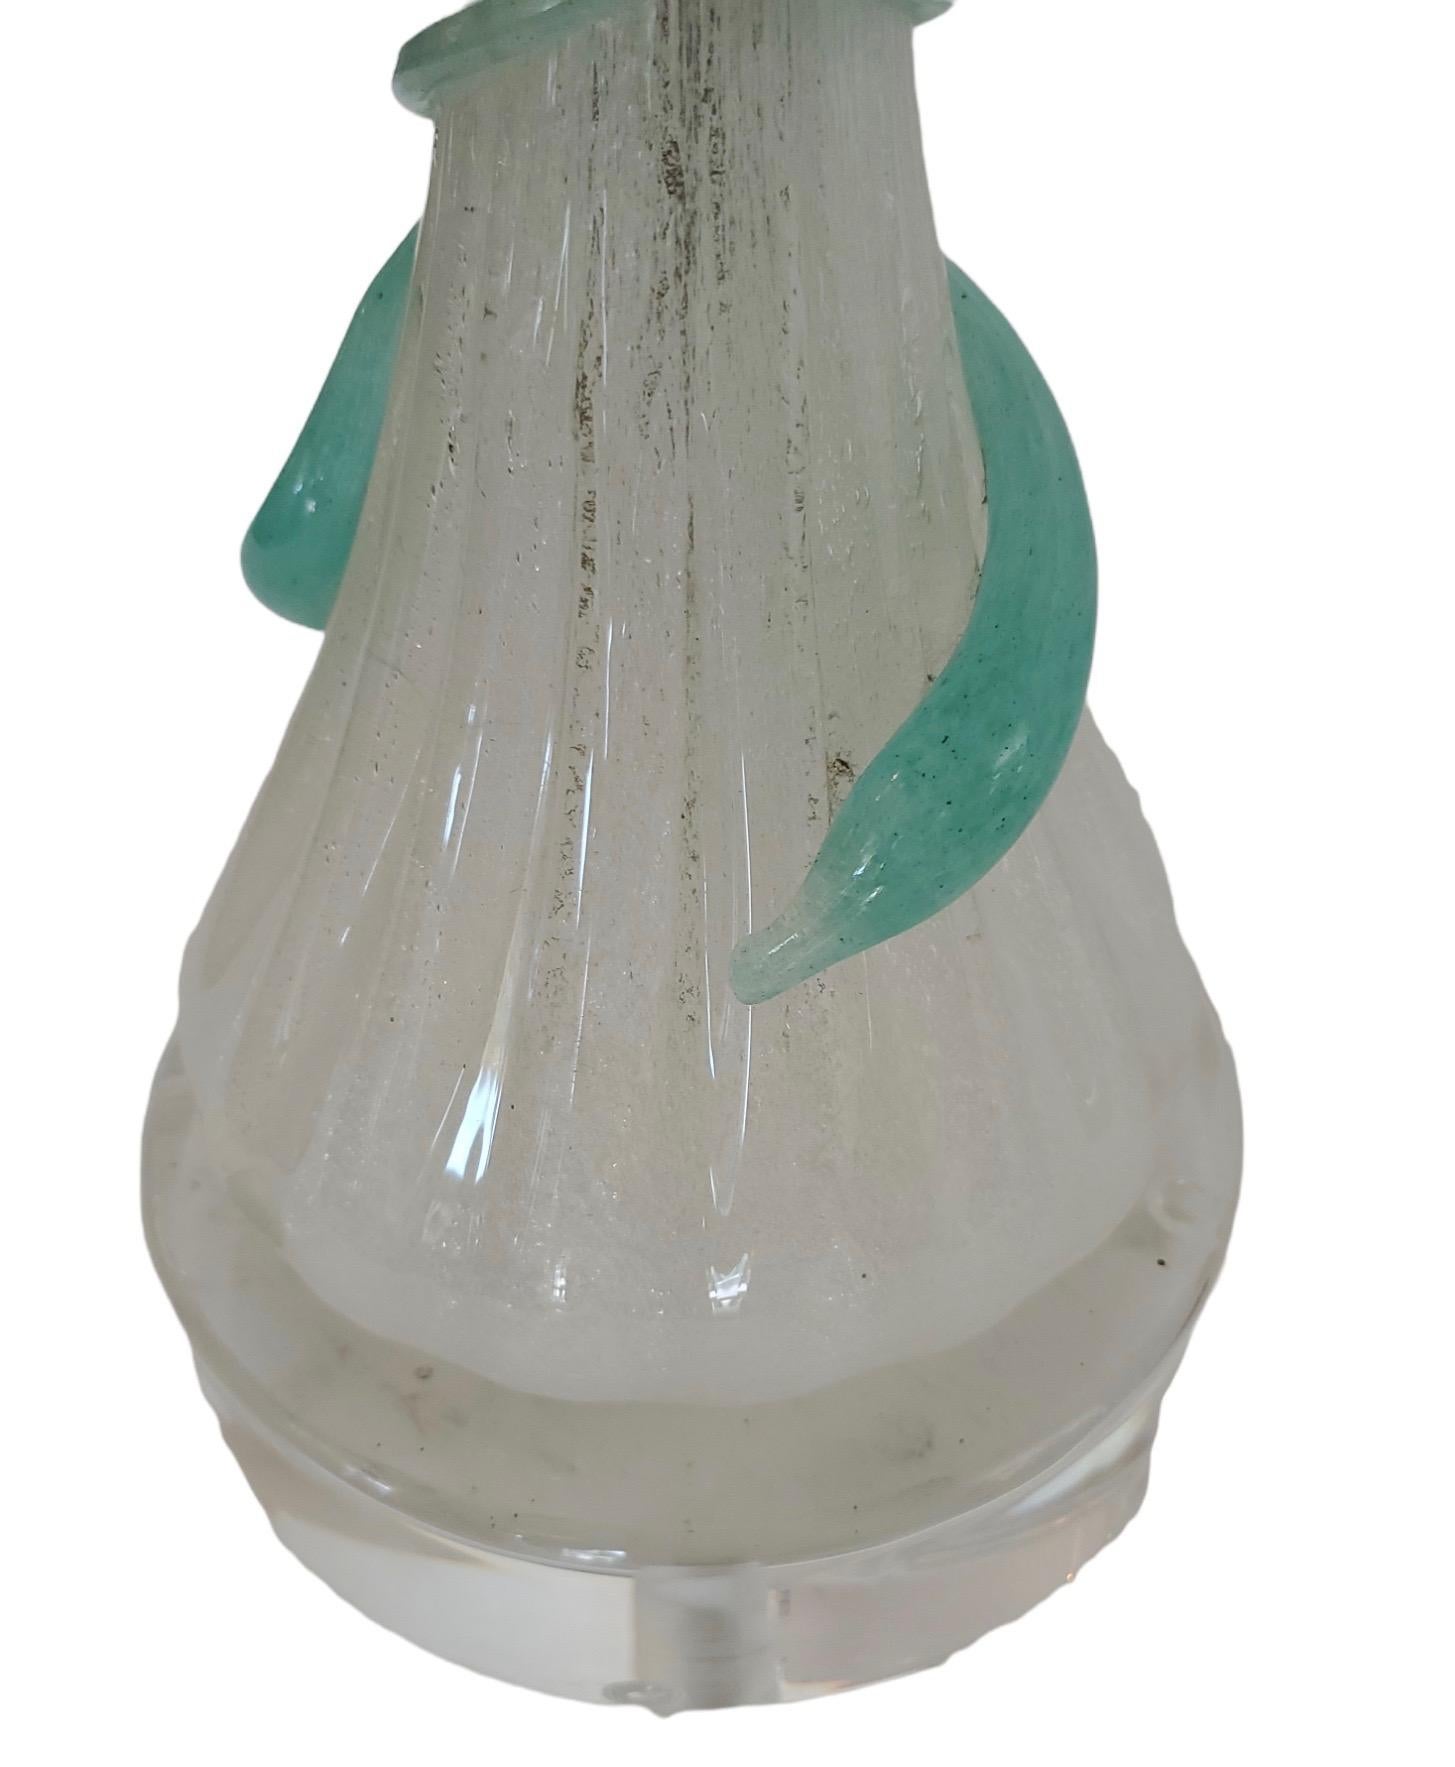 Venezianische Lampe aus dem 20. Jahrhundert mit vielen kontrollierten Blasen. Mit applizierten aquamarinfarbenen Glasstrudeln. Kundenspezifischer Pergament-Schirm. Neue Acrylbasis. Die Abmessungen des Schirms sind 7